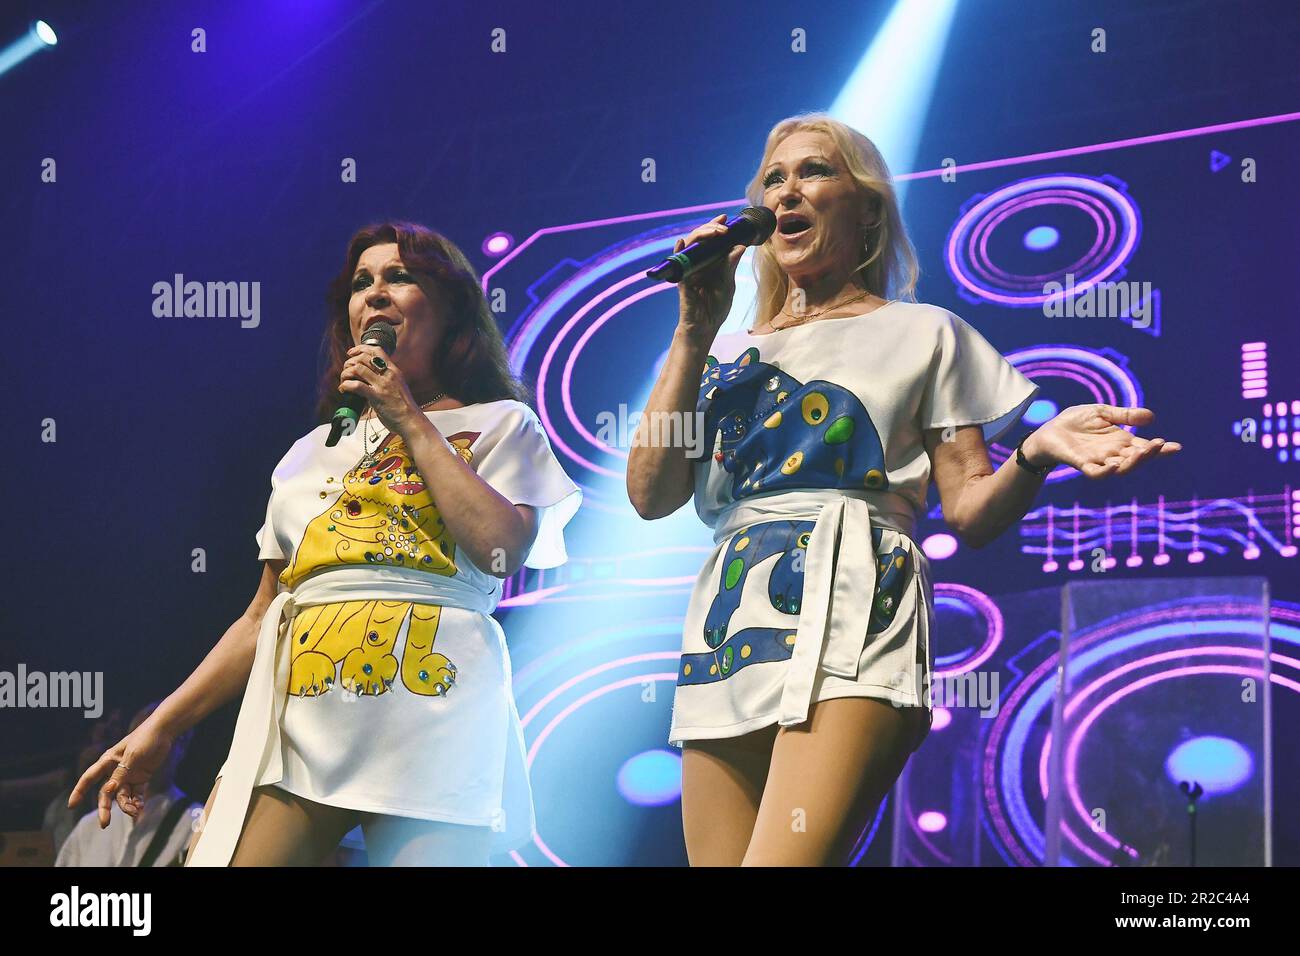 Rio de Janeiro, Brasile, 21 aprile 2023. I cantanti Agnetha Fältskog e anni Frid Lyngstad del gruppo musicale svedese ABBA, durante un concerto a Espao Foto Stock